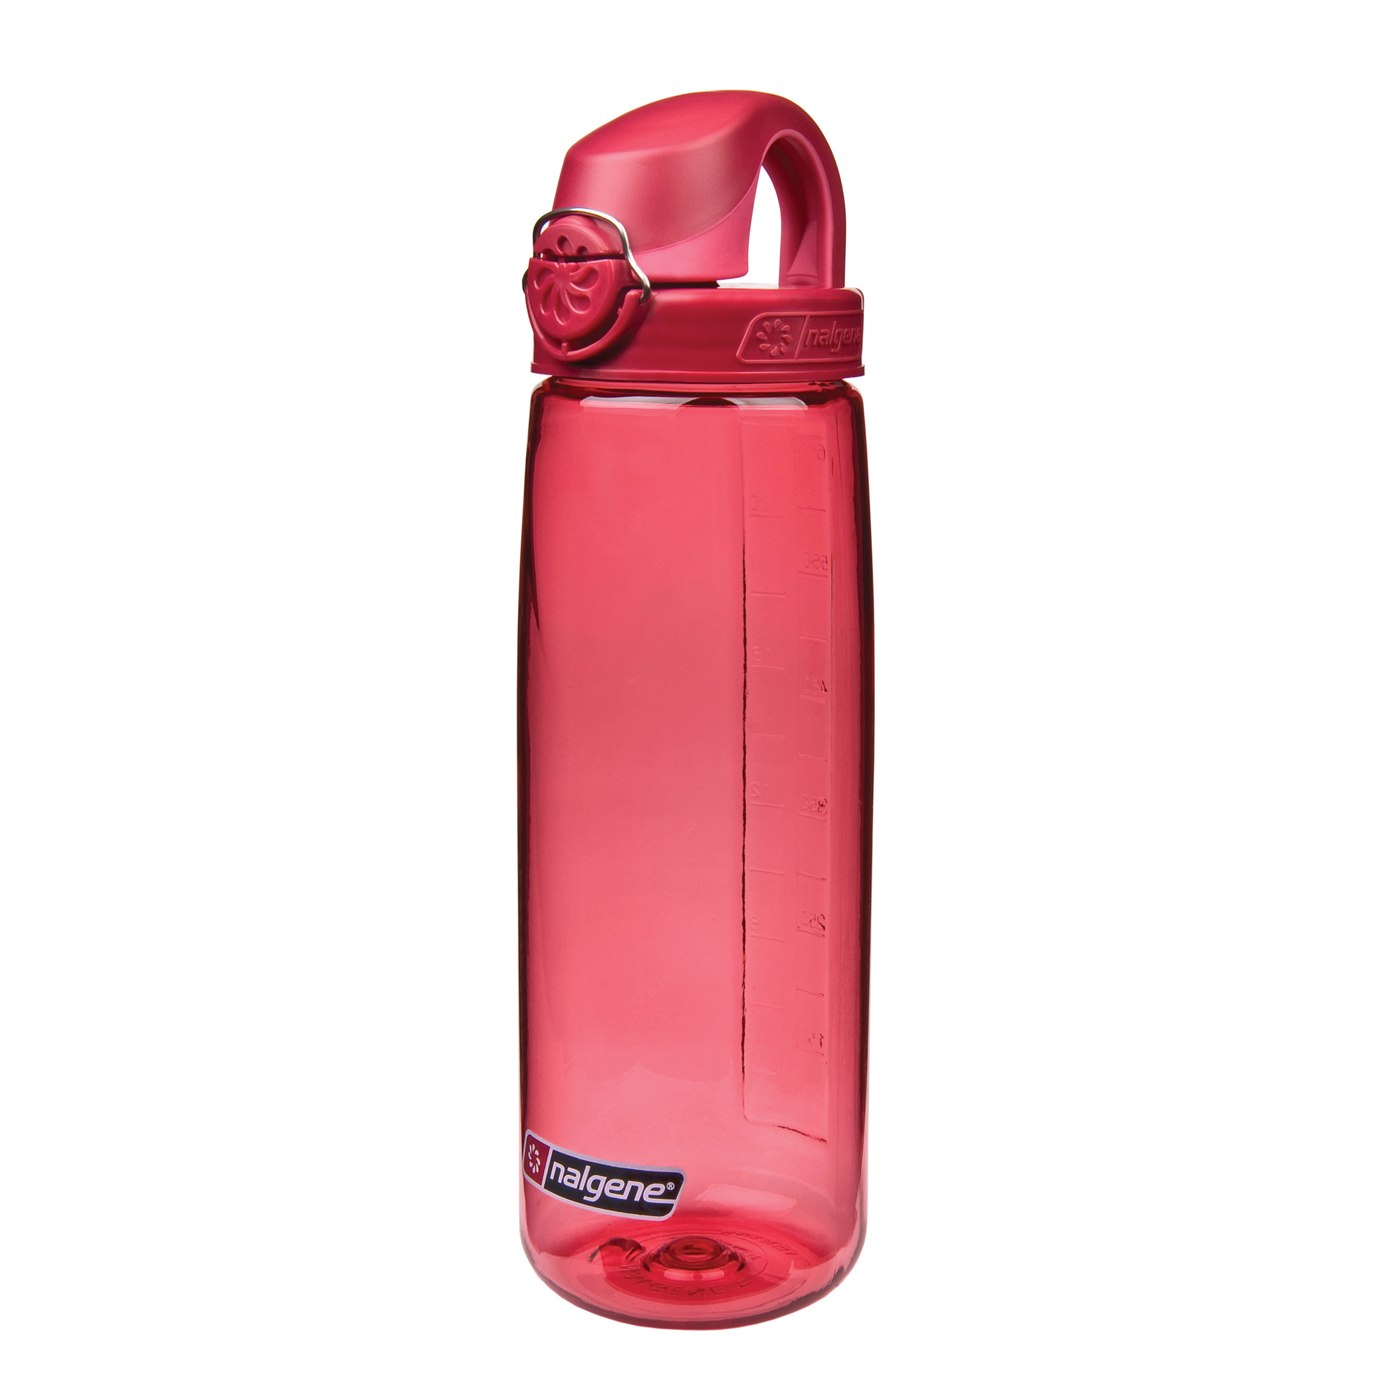 Produktbild von Nalgene OTF Trinkflasche - 0.65l - rot